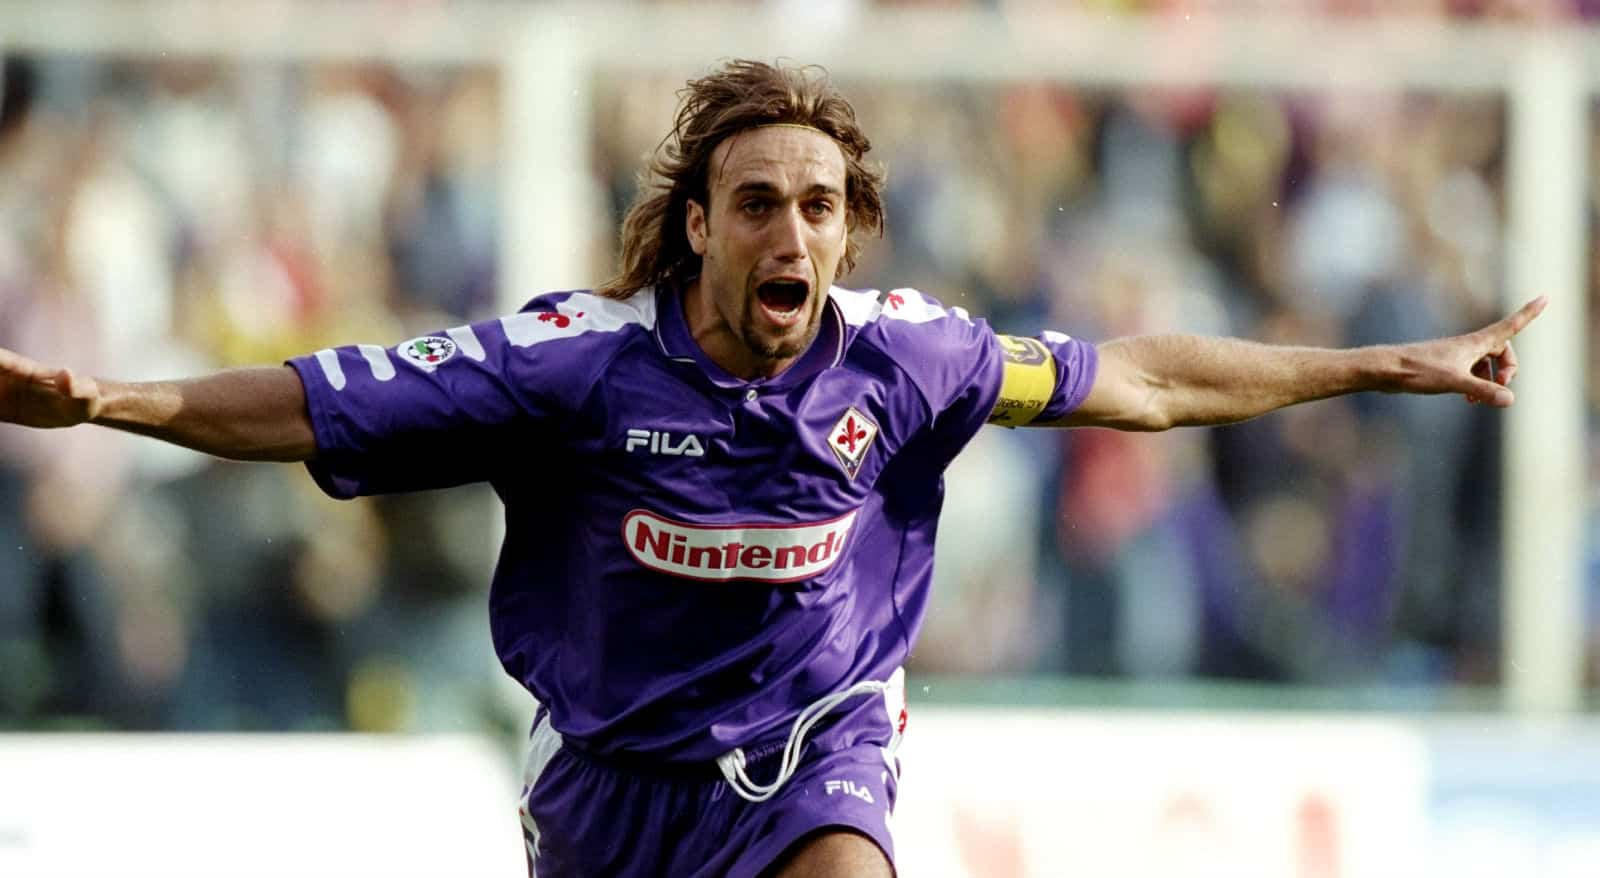 17 – Batistuta: atuava como atacante e fez história na Fiorentina, também com passagens por Roma (depois) e River e Boca (antes). Foi o único jogador a marcar um hat-trick em duas Copas diferentes